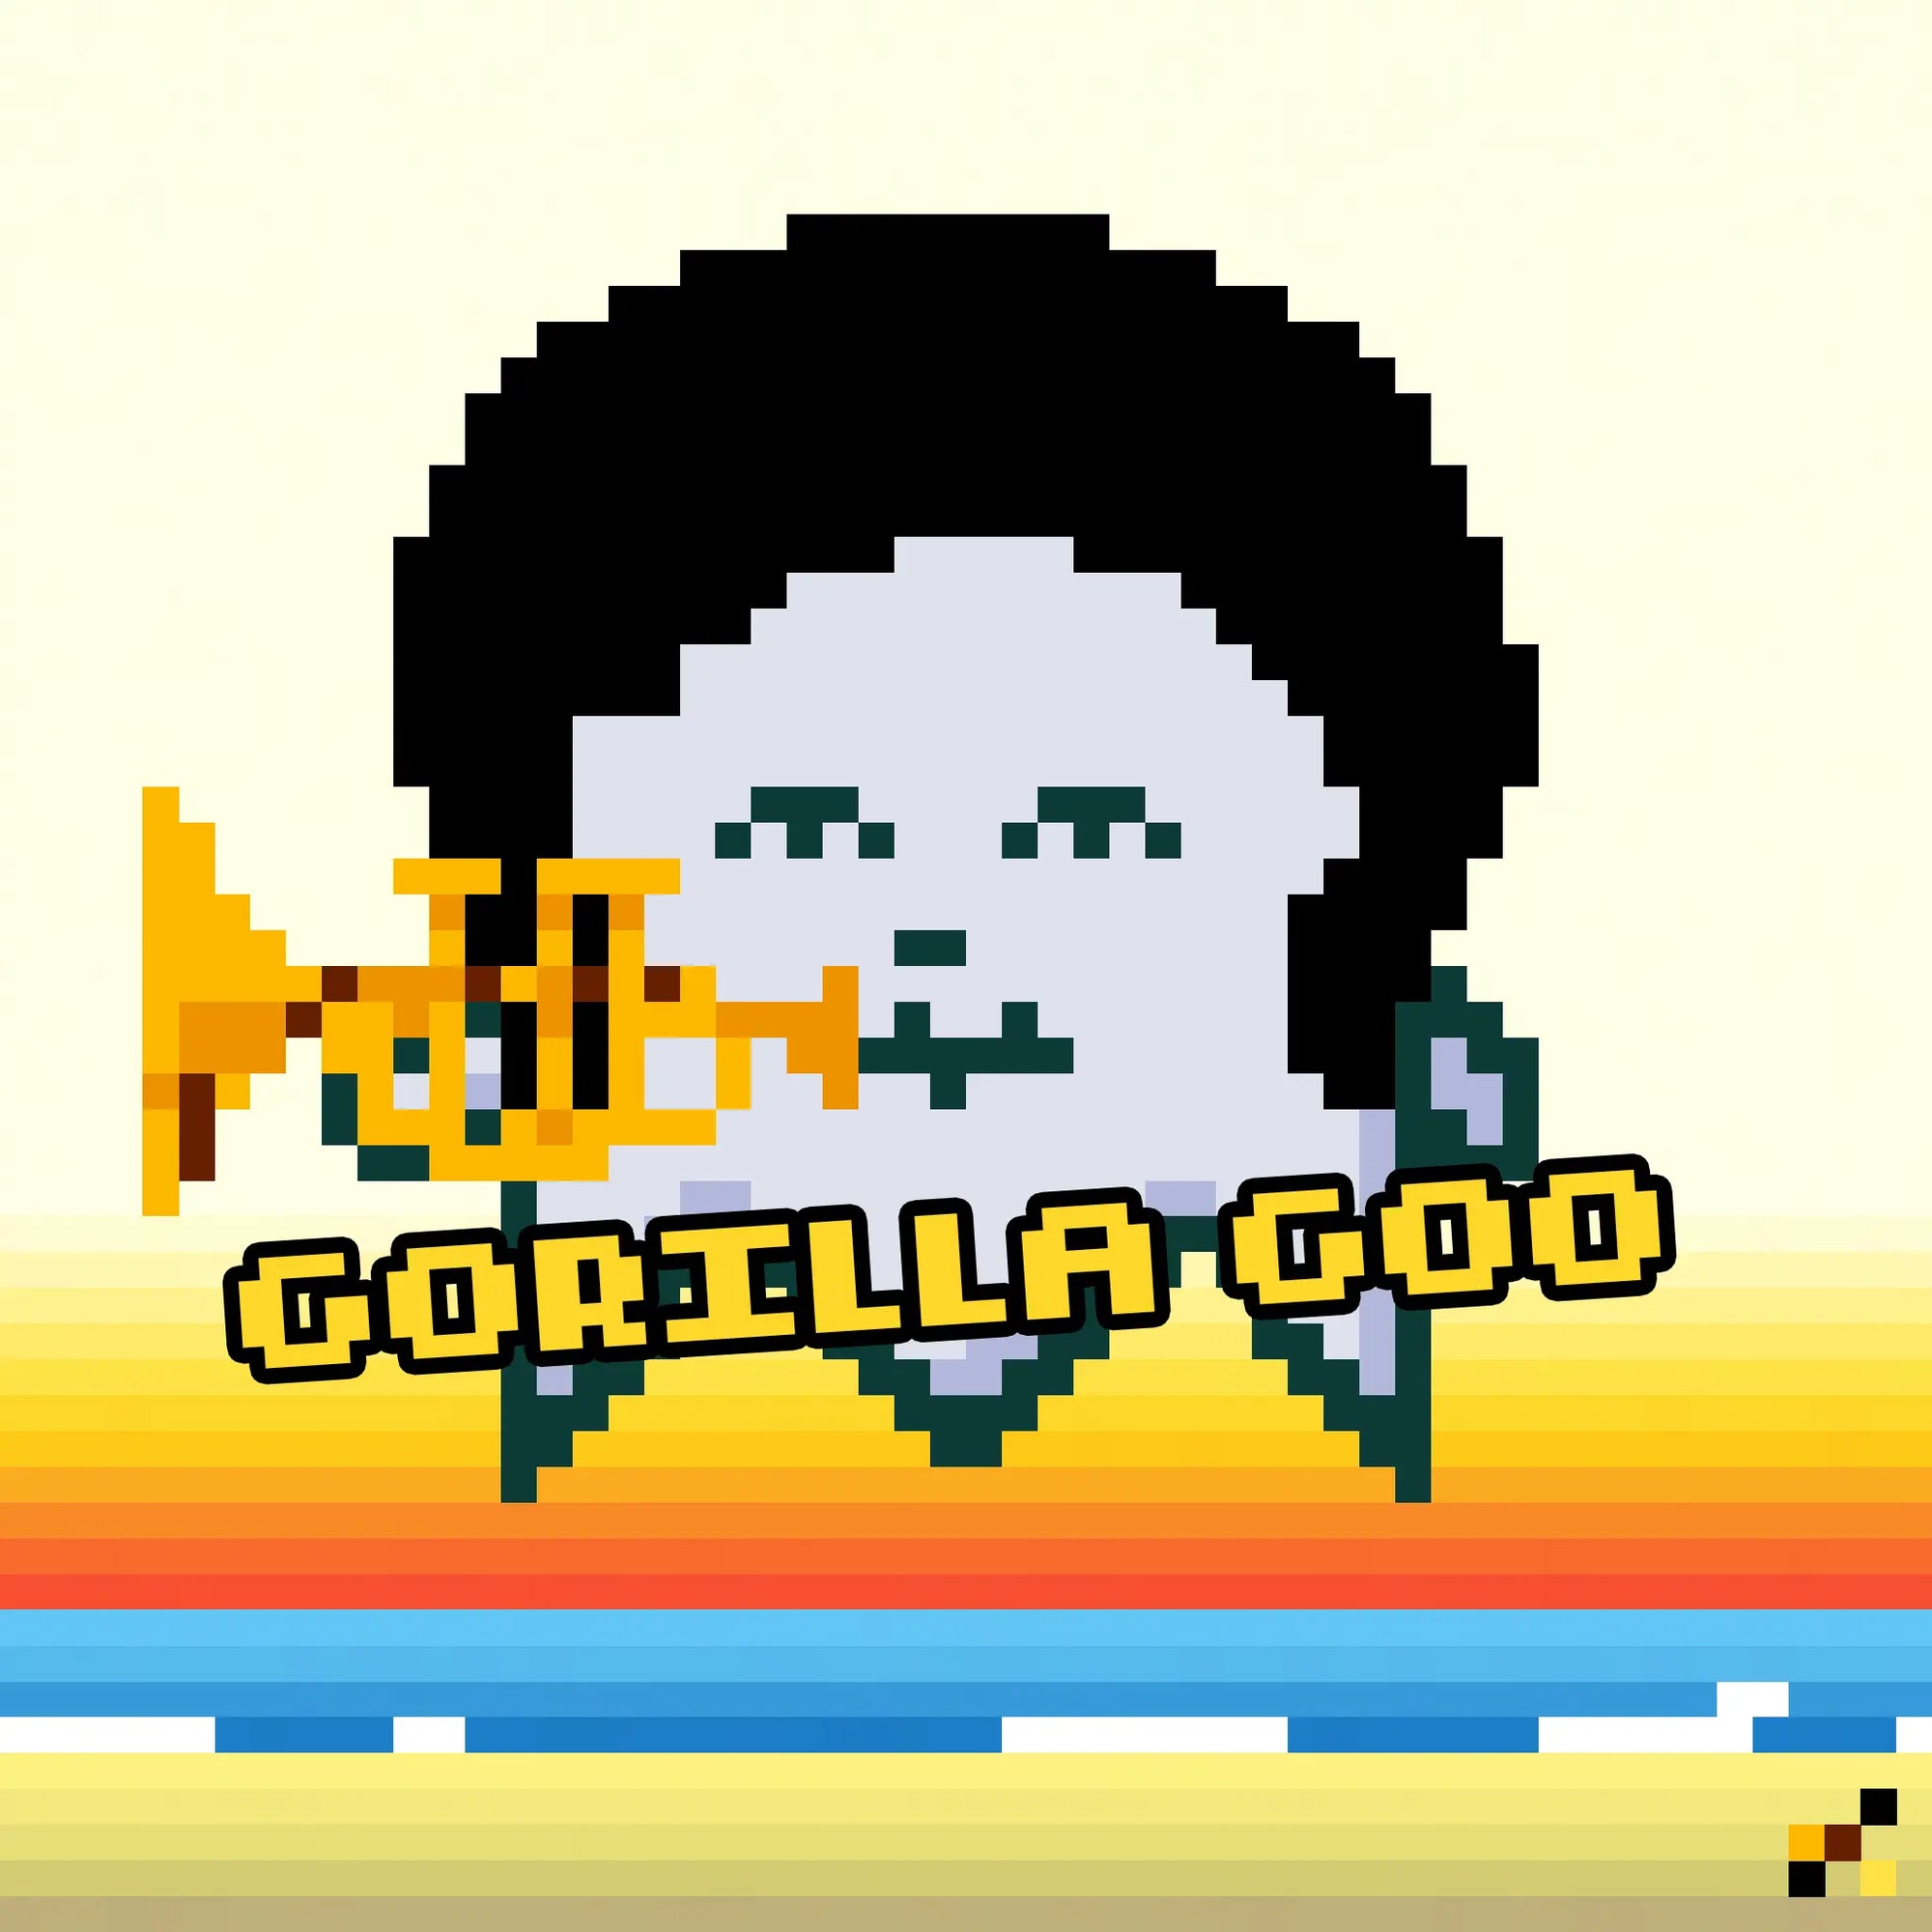 Gorilla Goo